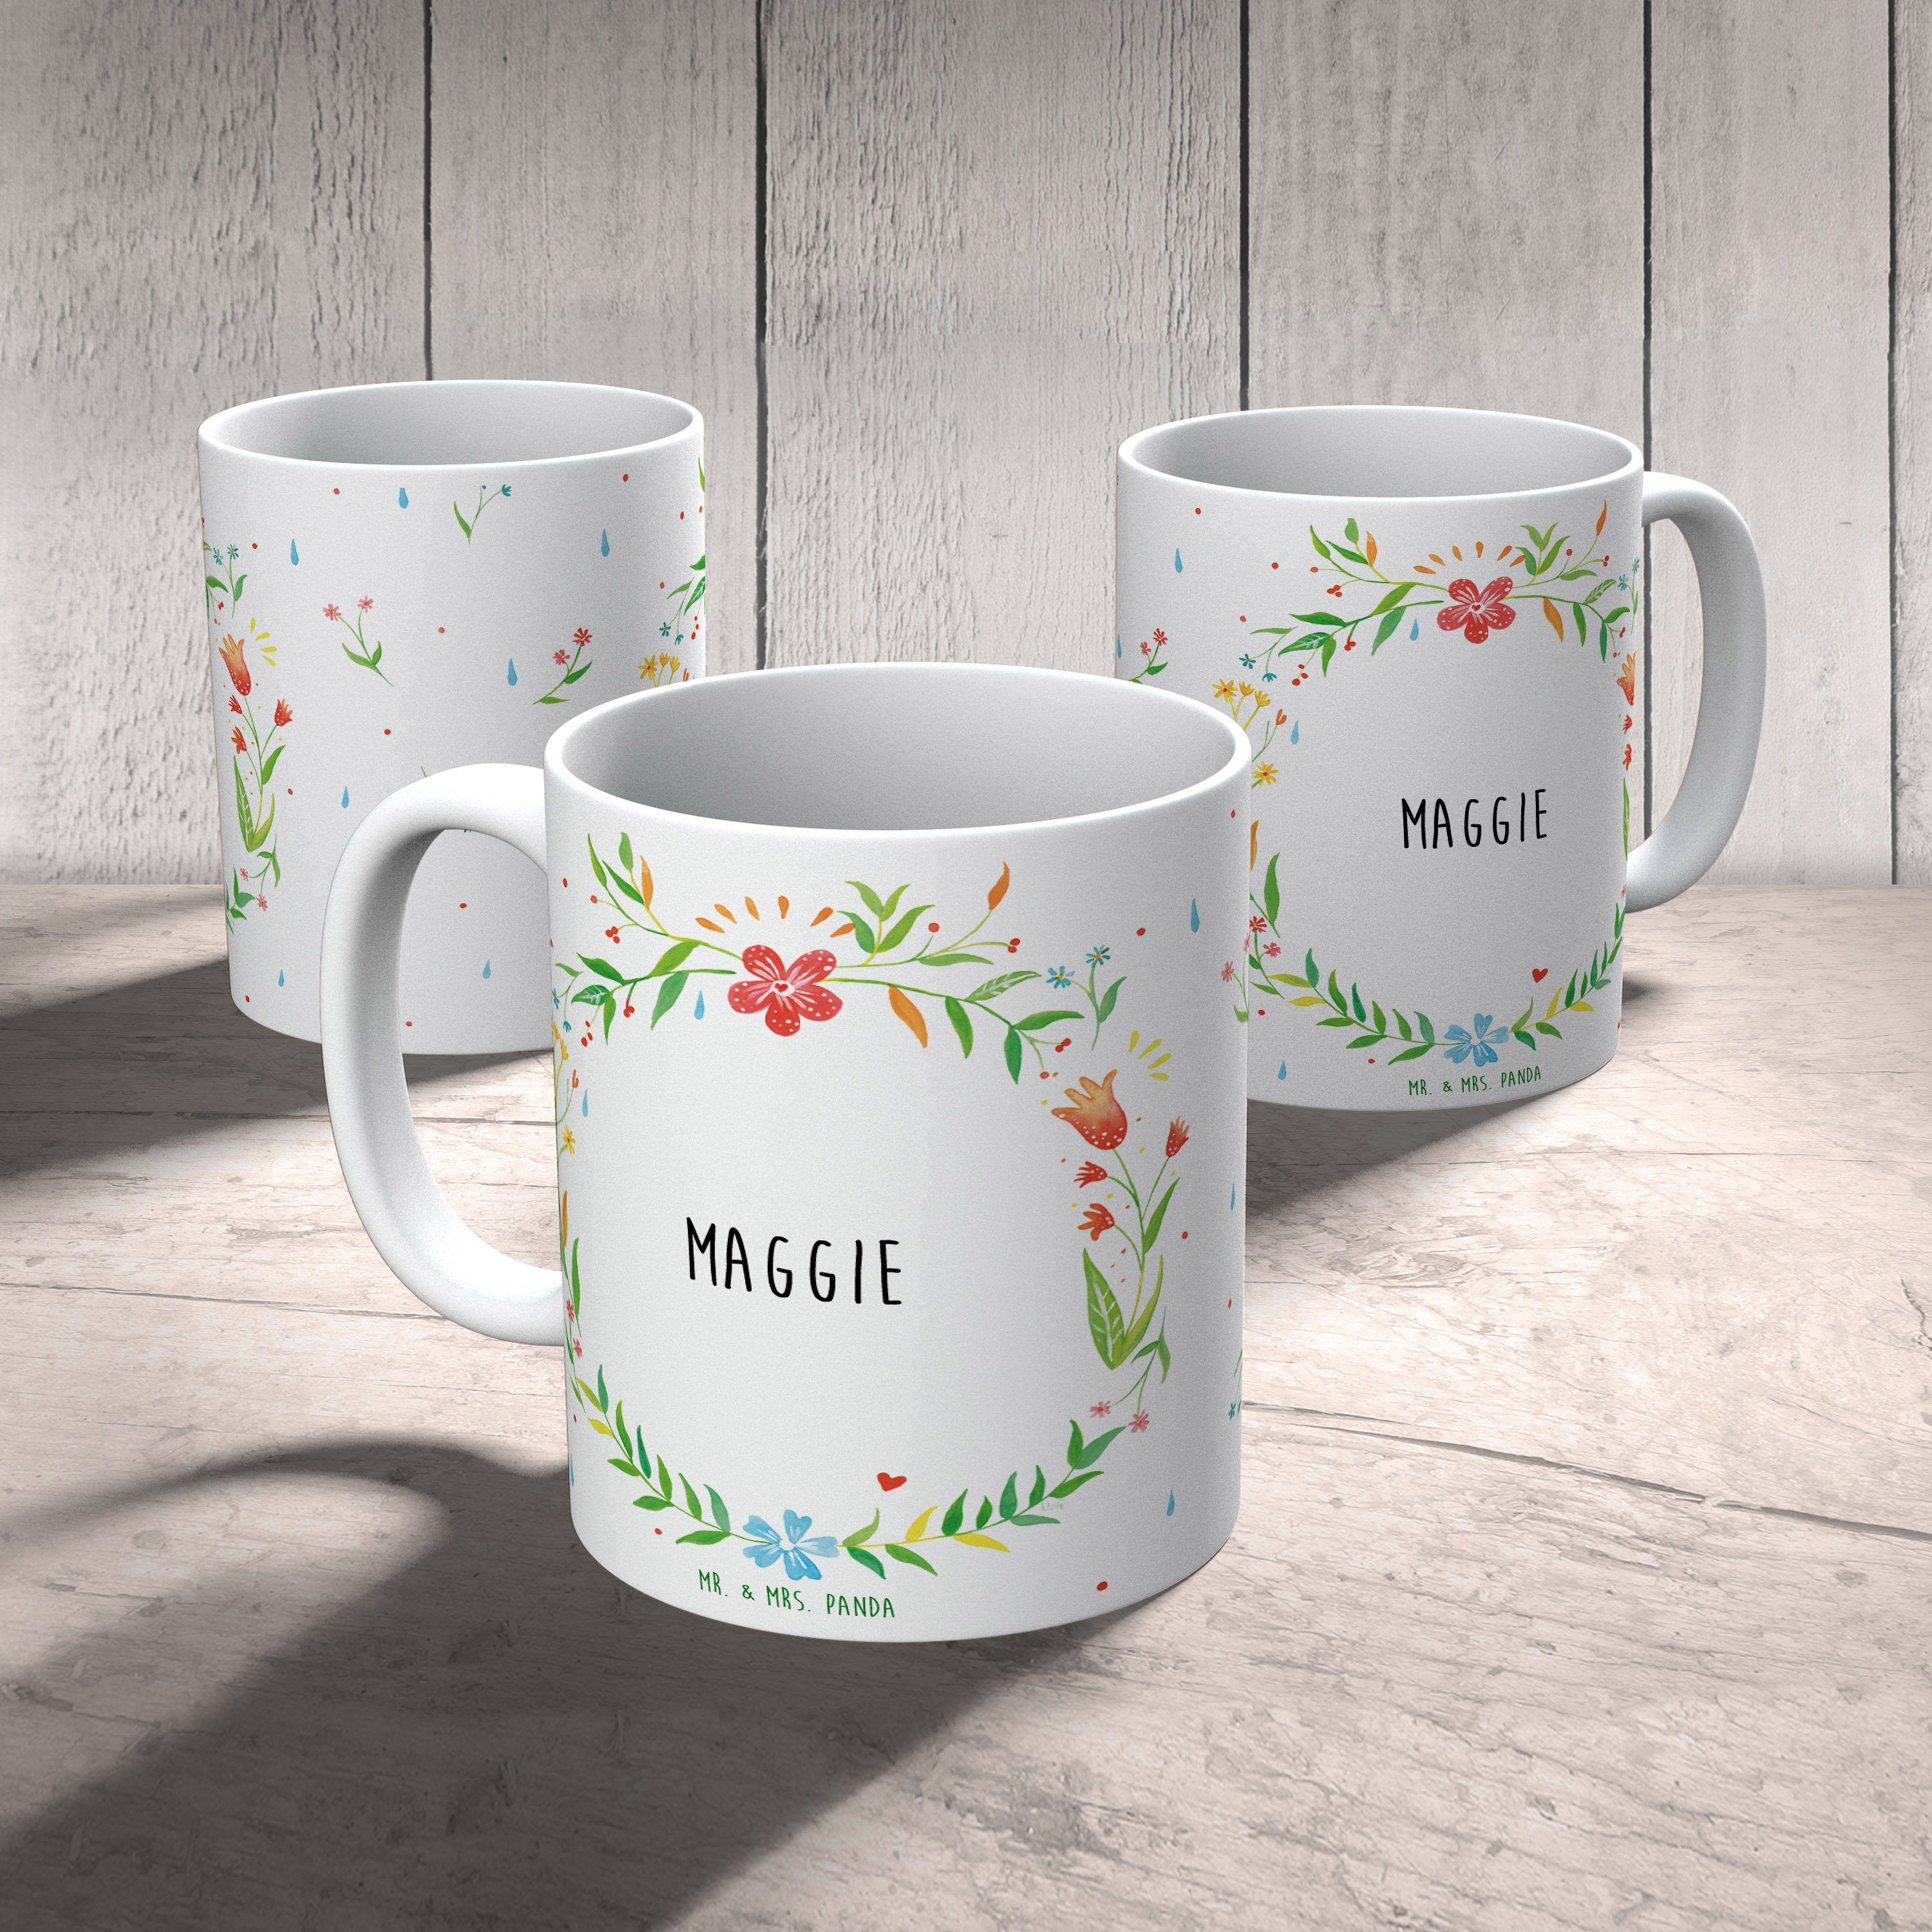 Mr. & Mrs. Panda Tasse Becher, Geschenk, Kaffeebecher, Keramik - Teebecher, Tass, Kaffeetasse, Maggie